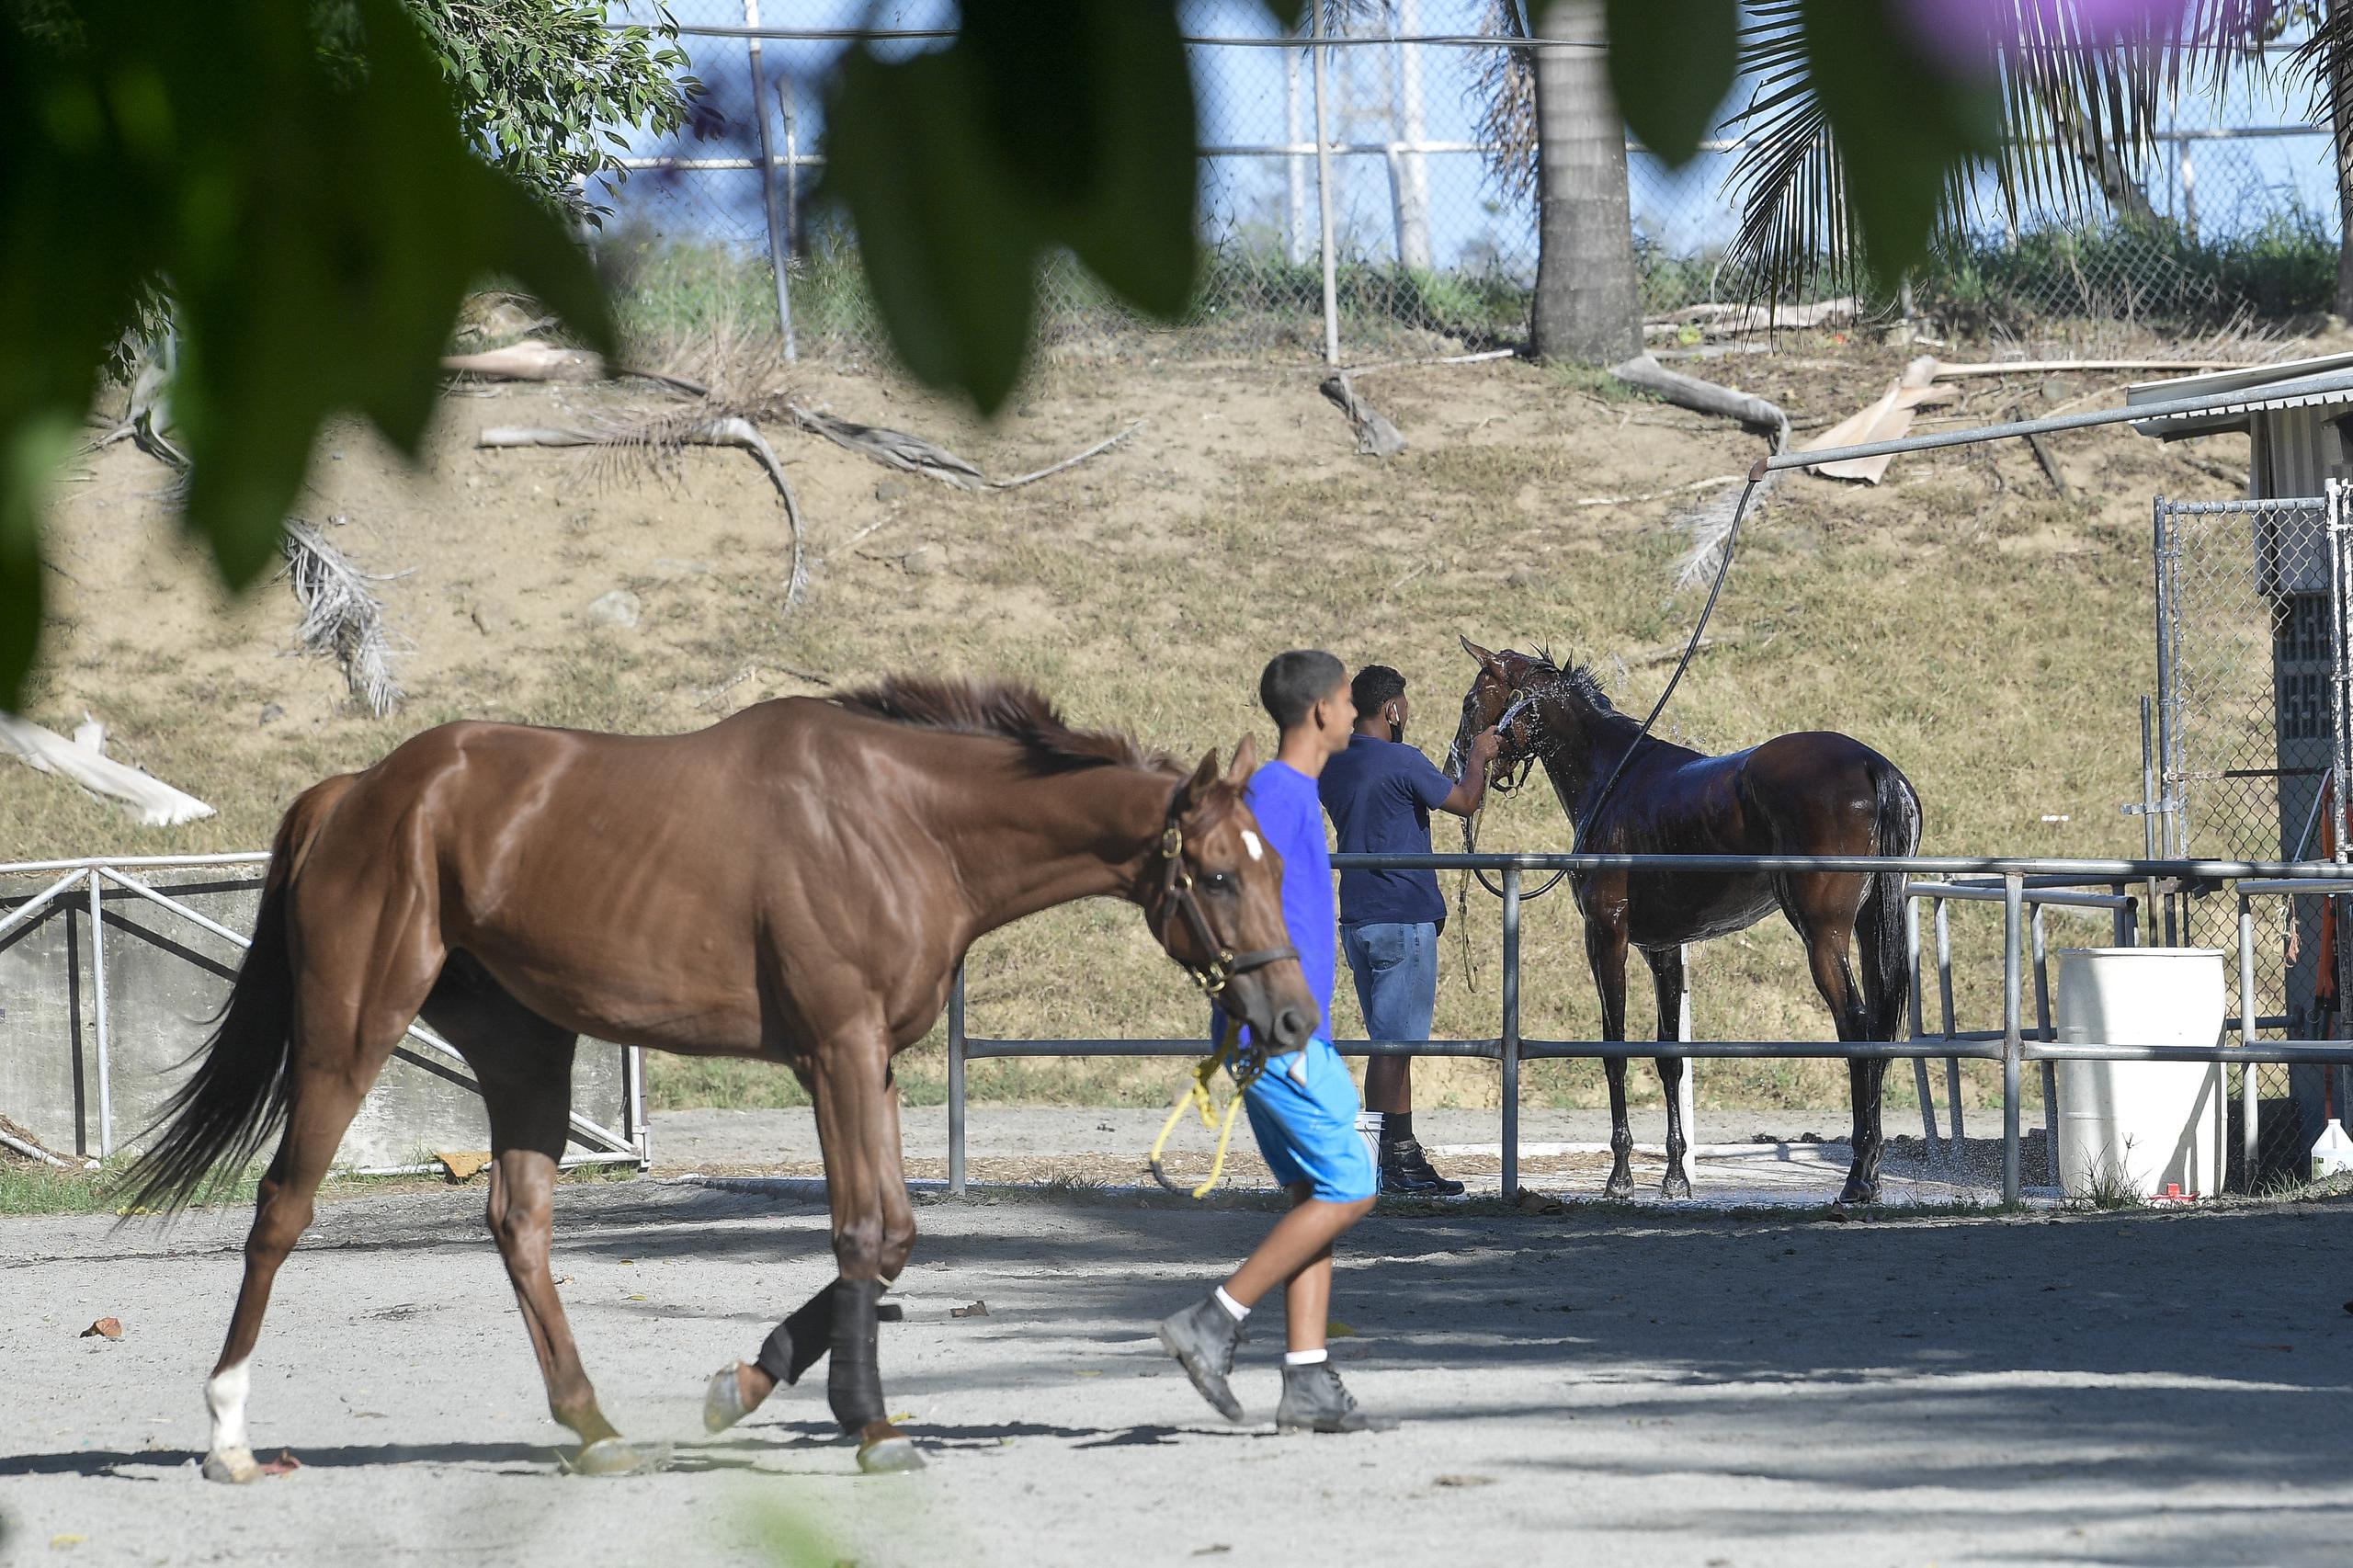 Los caballos importados llegan a Puerto Rico por vía marítima o aérea. La primera es la más económica, pero la más impactante para los animales.